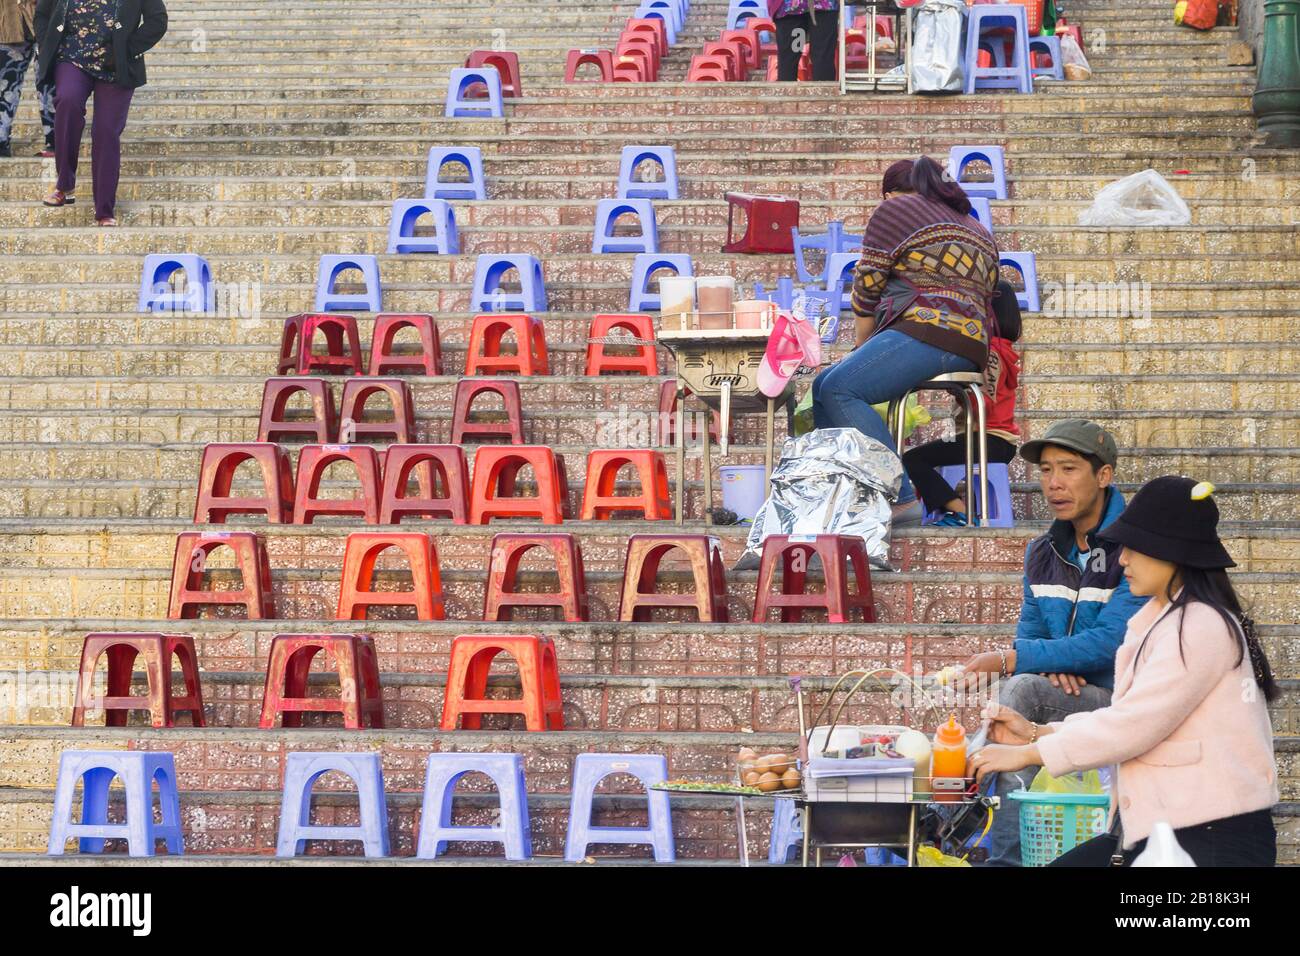 Dalat Vietnam - Street vendors waiting for customers in Dalat, Vietnam, Southeast Asia. Stock Photo